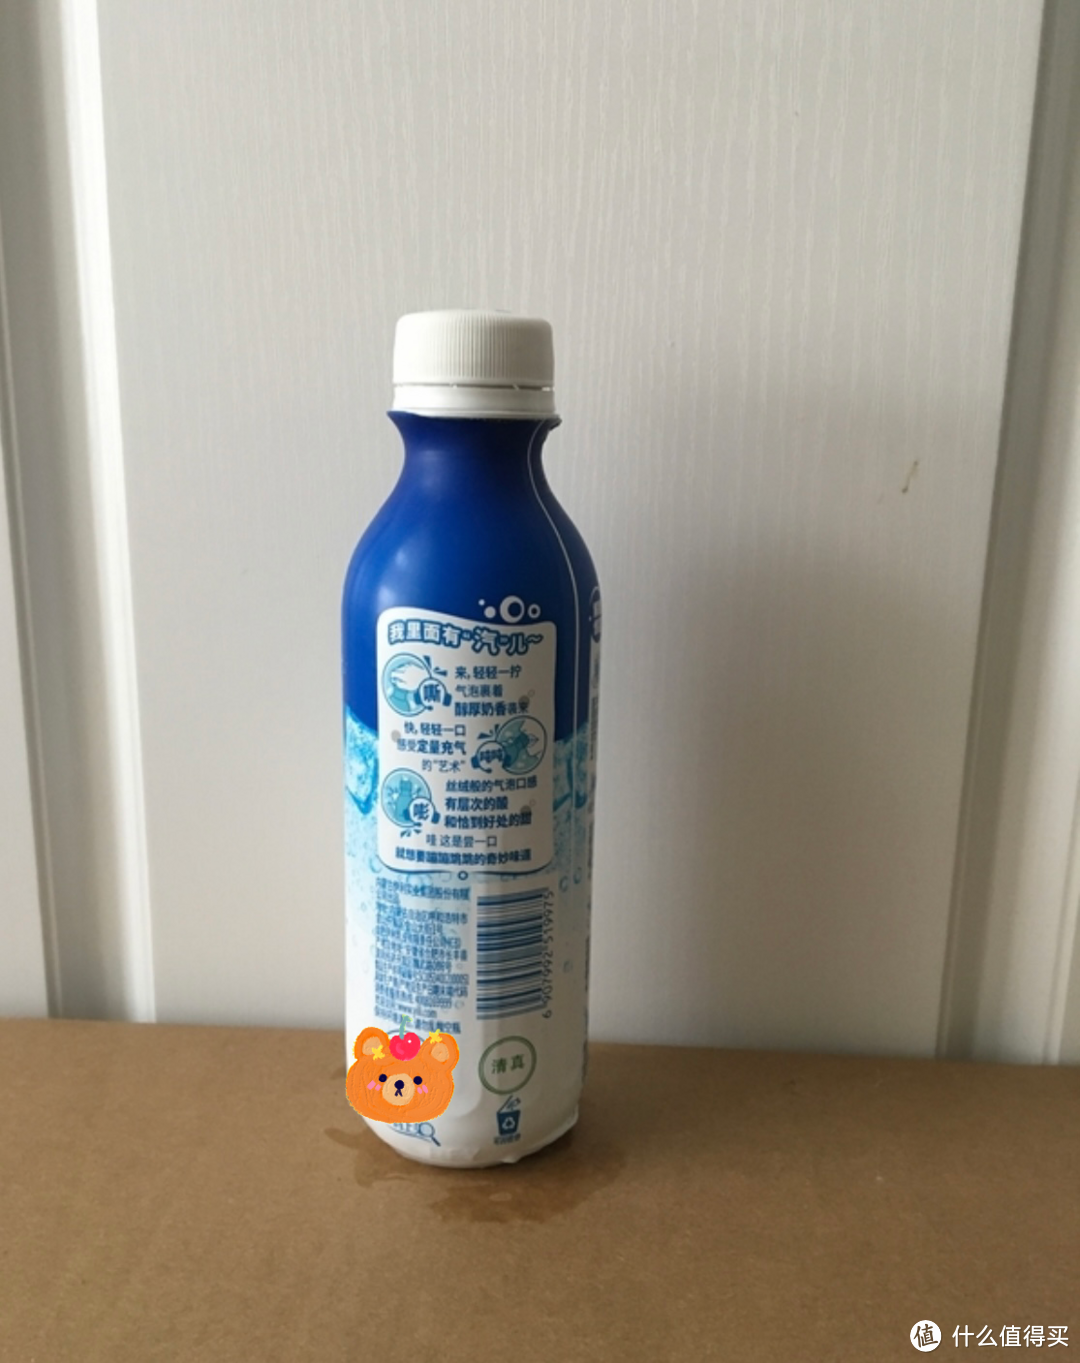 安慕希有气泡的酸奶。其实是乳酸菌风味发酵饮料。